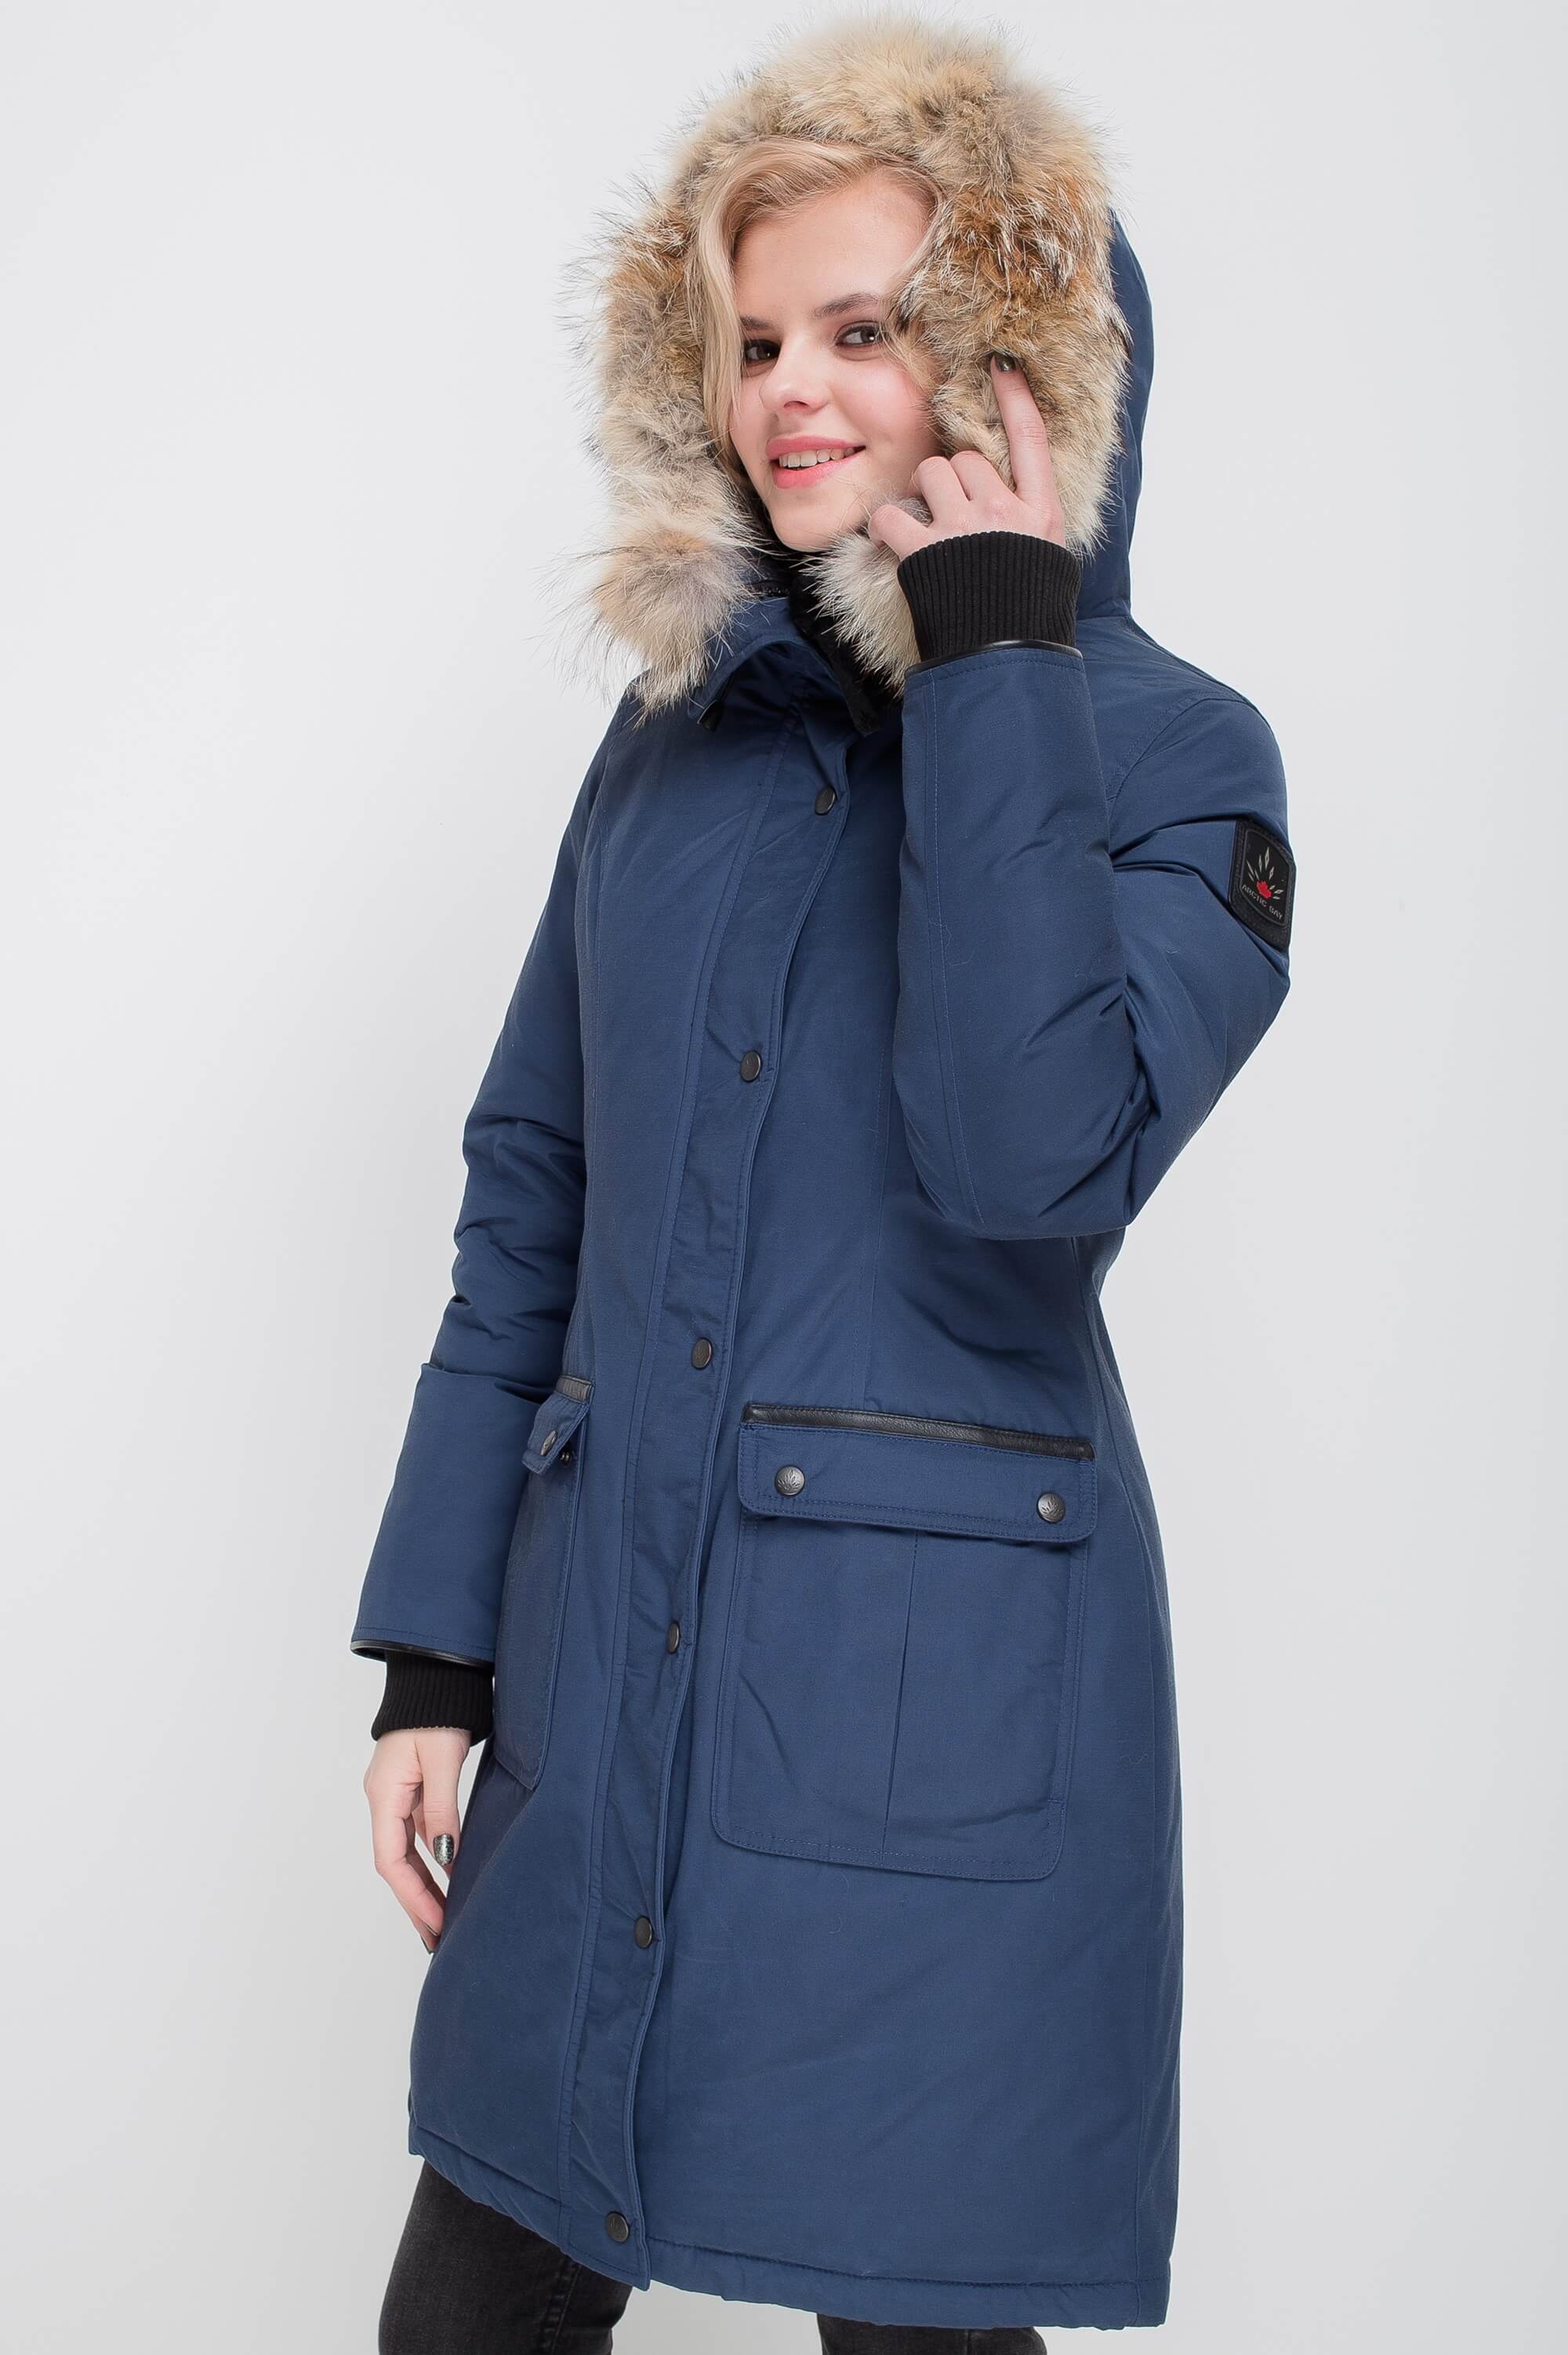 Women's Winter Coats, Long Coats